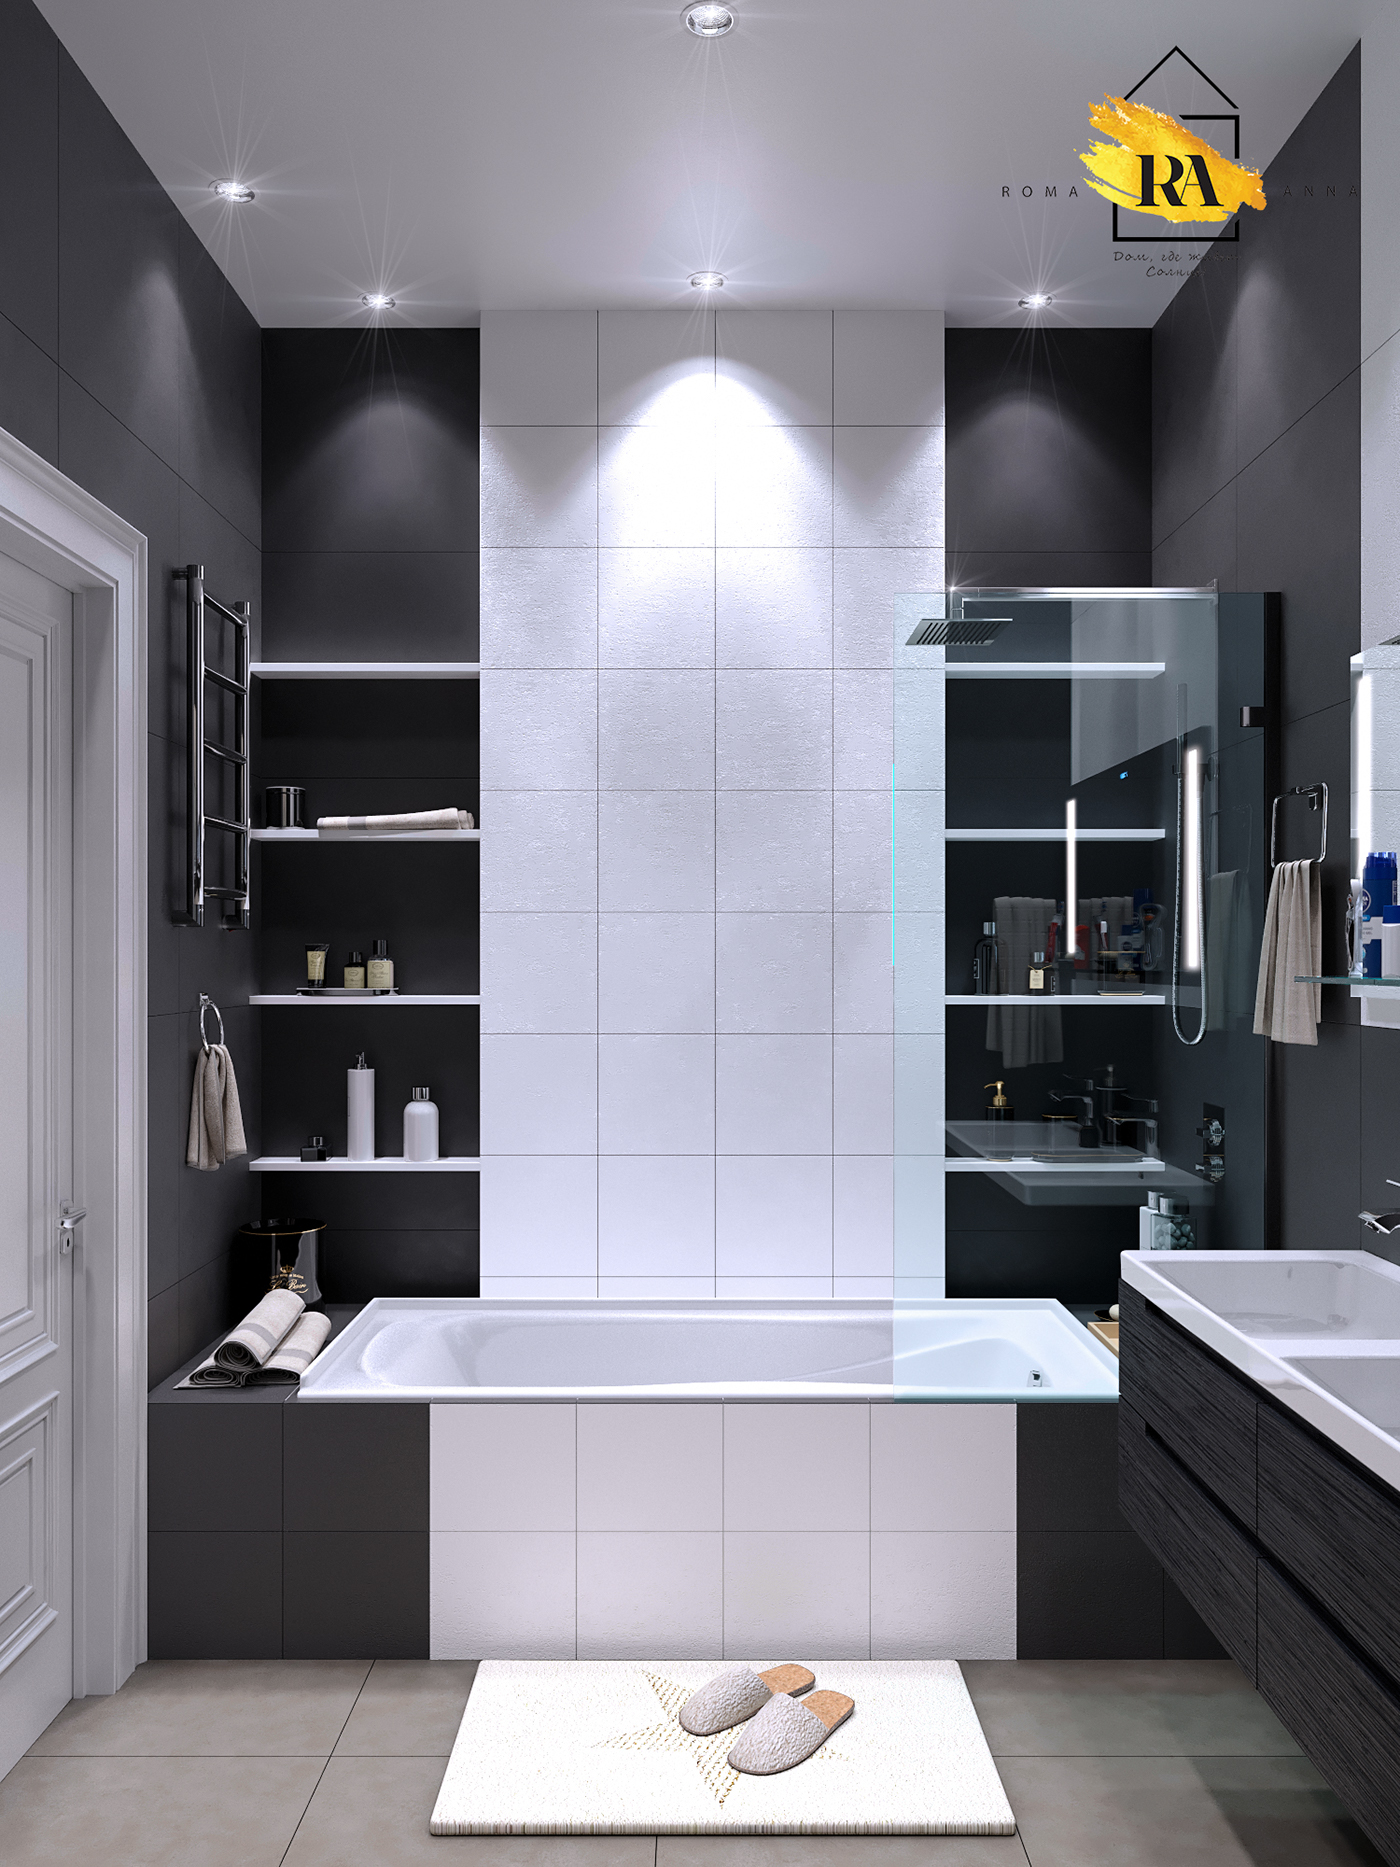 बाथरूम का दृश्य 3d max corona render में प्रस्तुत छवि